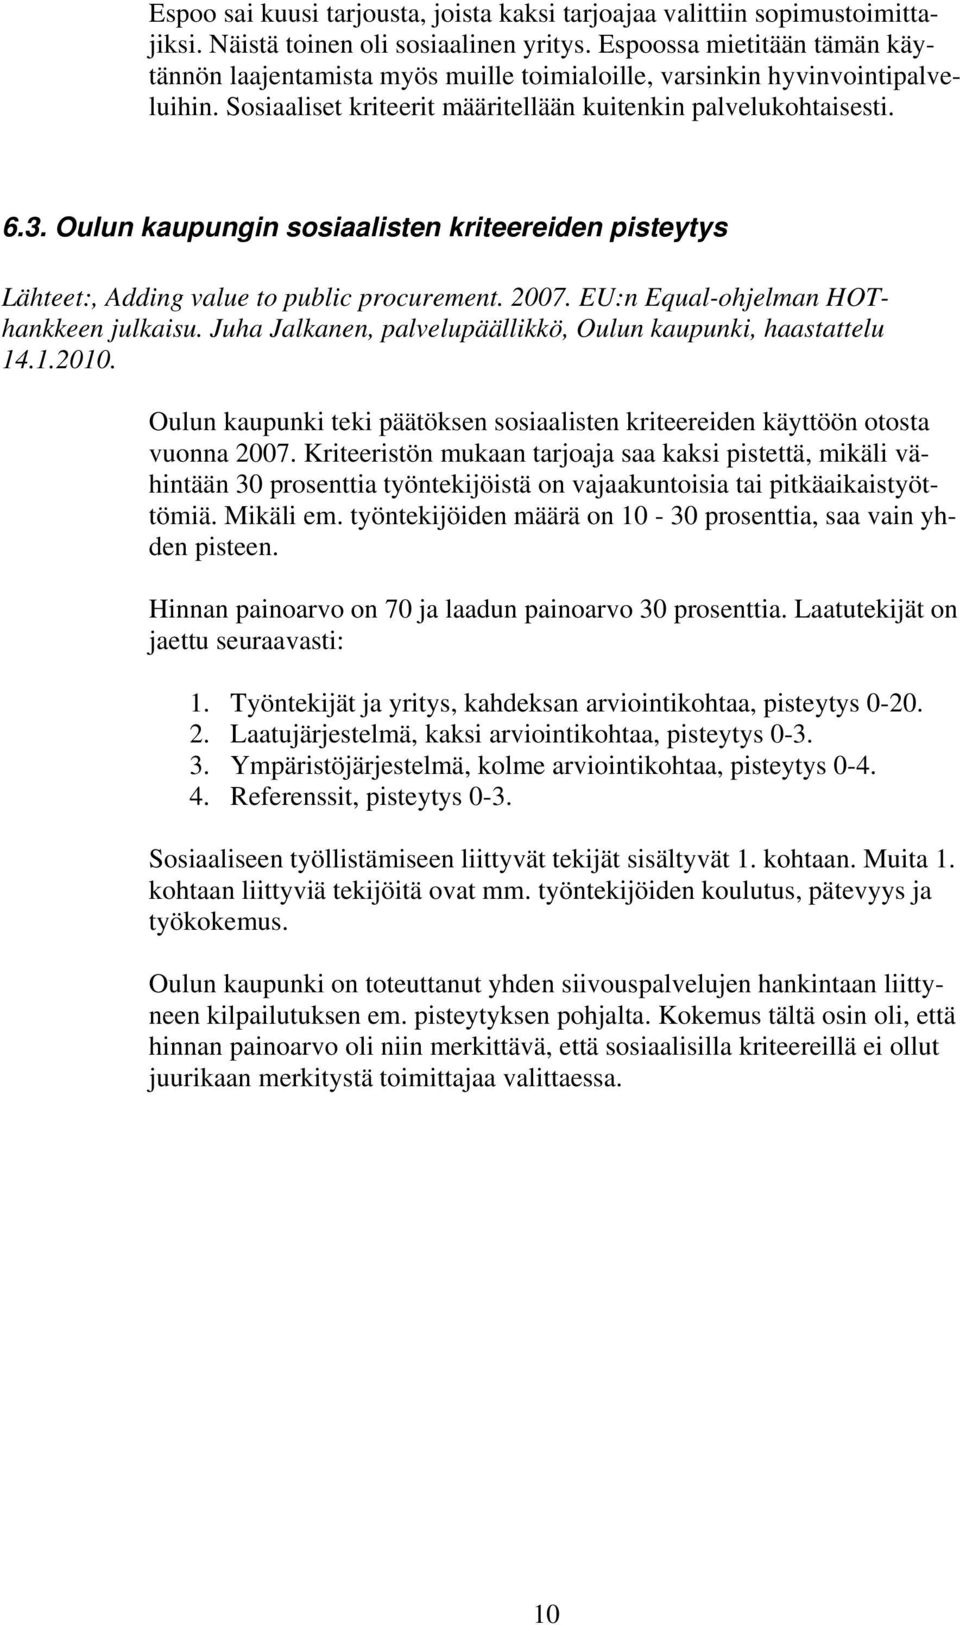 Oulun kaupungin sosiaalisten kriteereiden pisteytys Lähteet:, Adding value to public procurement. 2007. EU:n Equal-ohjelman HOThankkeen julkaisu.